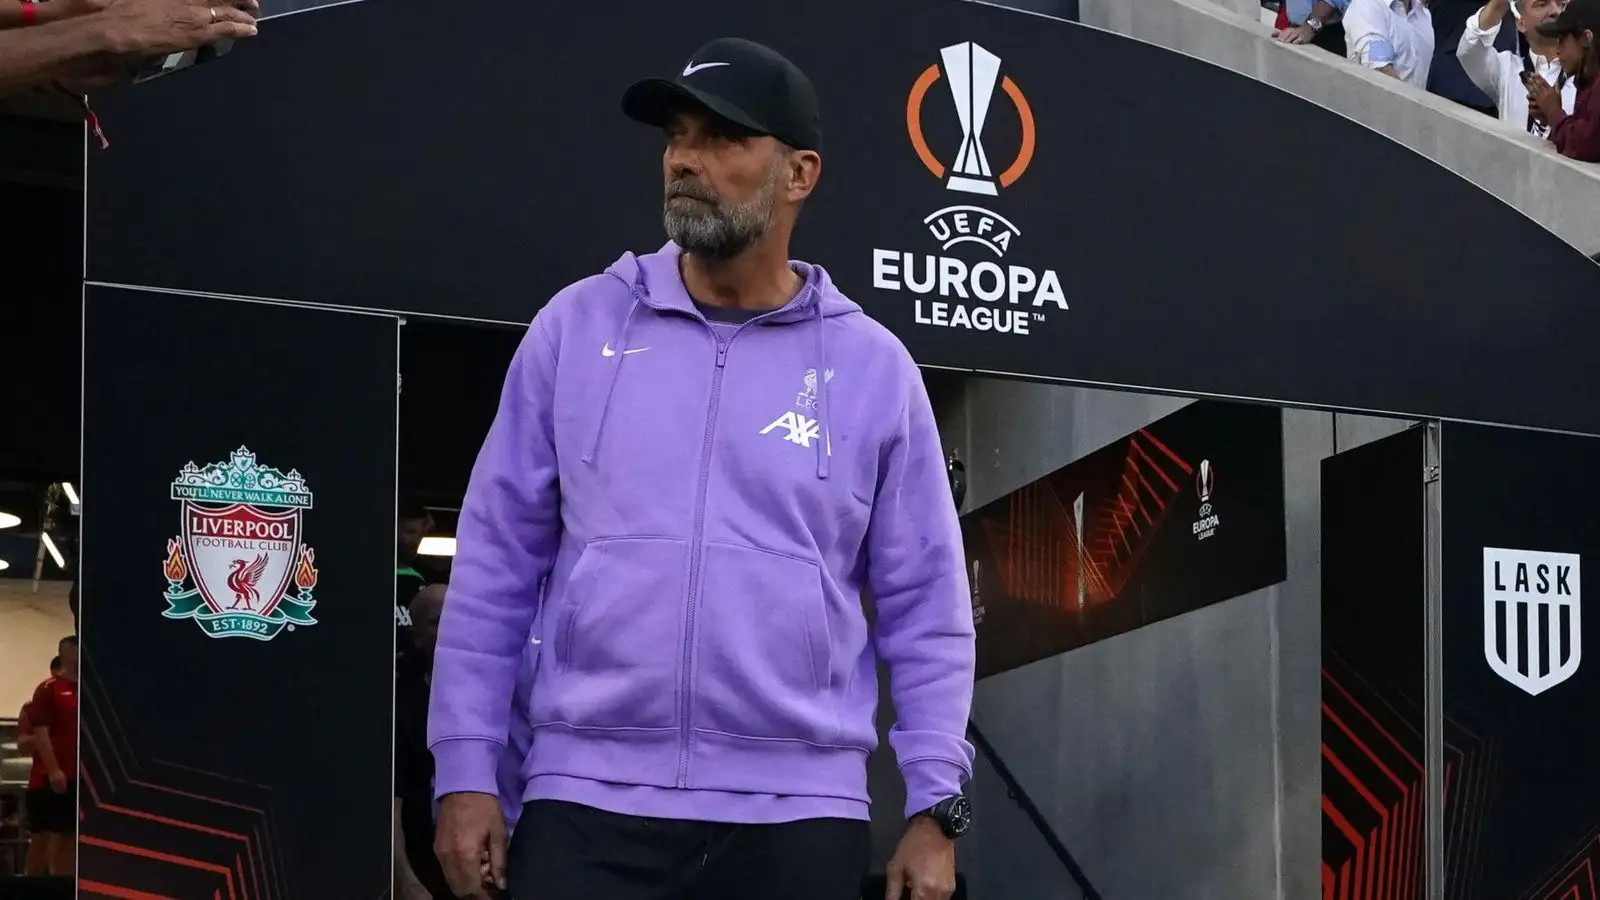 Liverpool manager Jurgen Klopp before a Europa League match.